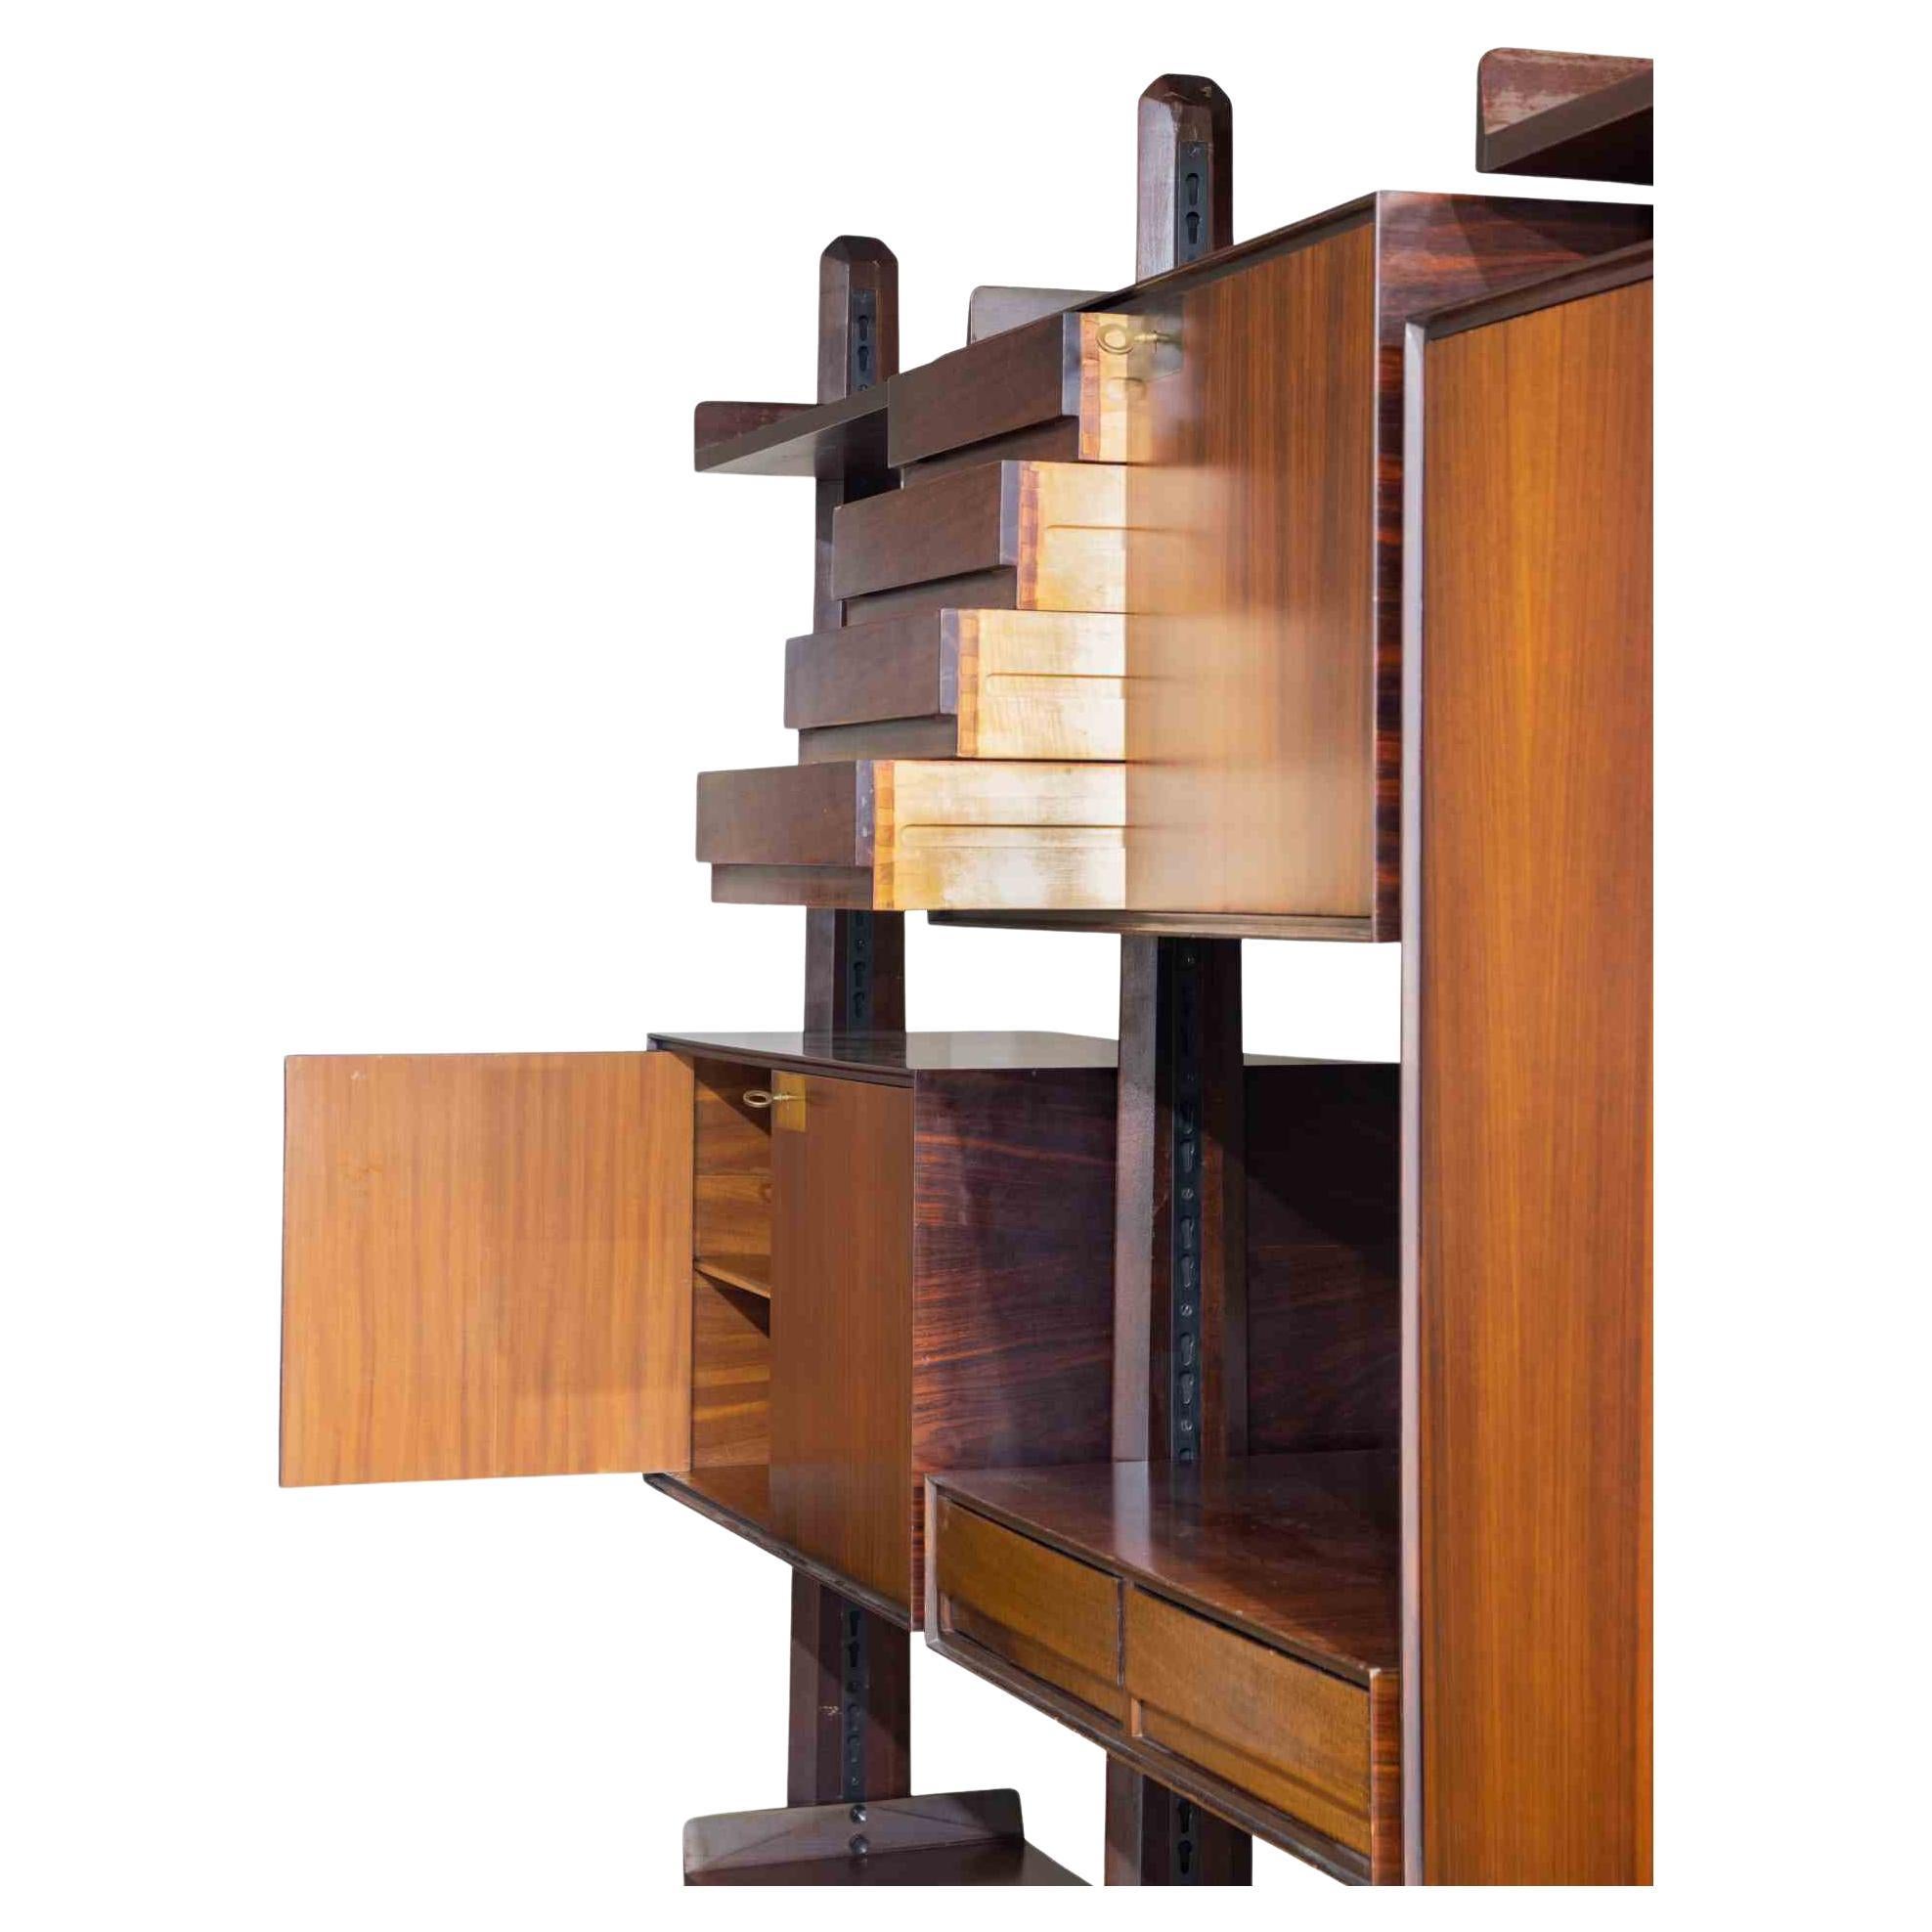 Das selbststehende Bücherregal ist ein originelles Designobjekt, das in den 1970er Jahren von Vittorio Dassi entworfen wurde.

Ein elegantes Bücherregal aus Holz.

Perfekt, um Ihr Zuhause zu dekorieren!

Die Kreationen von Vittorio Dassi